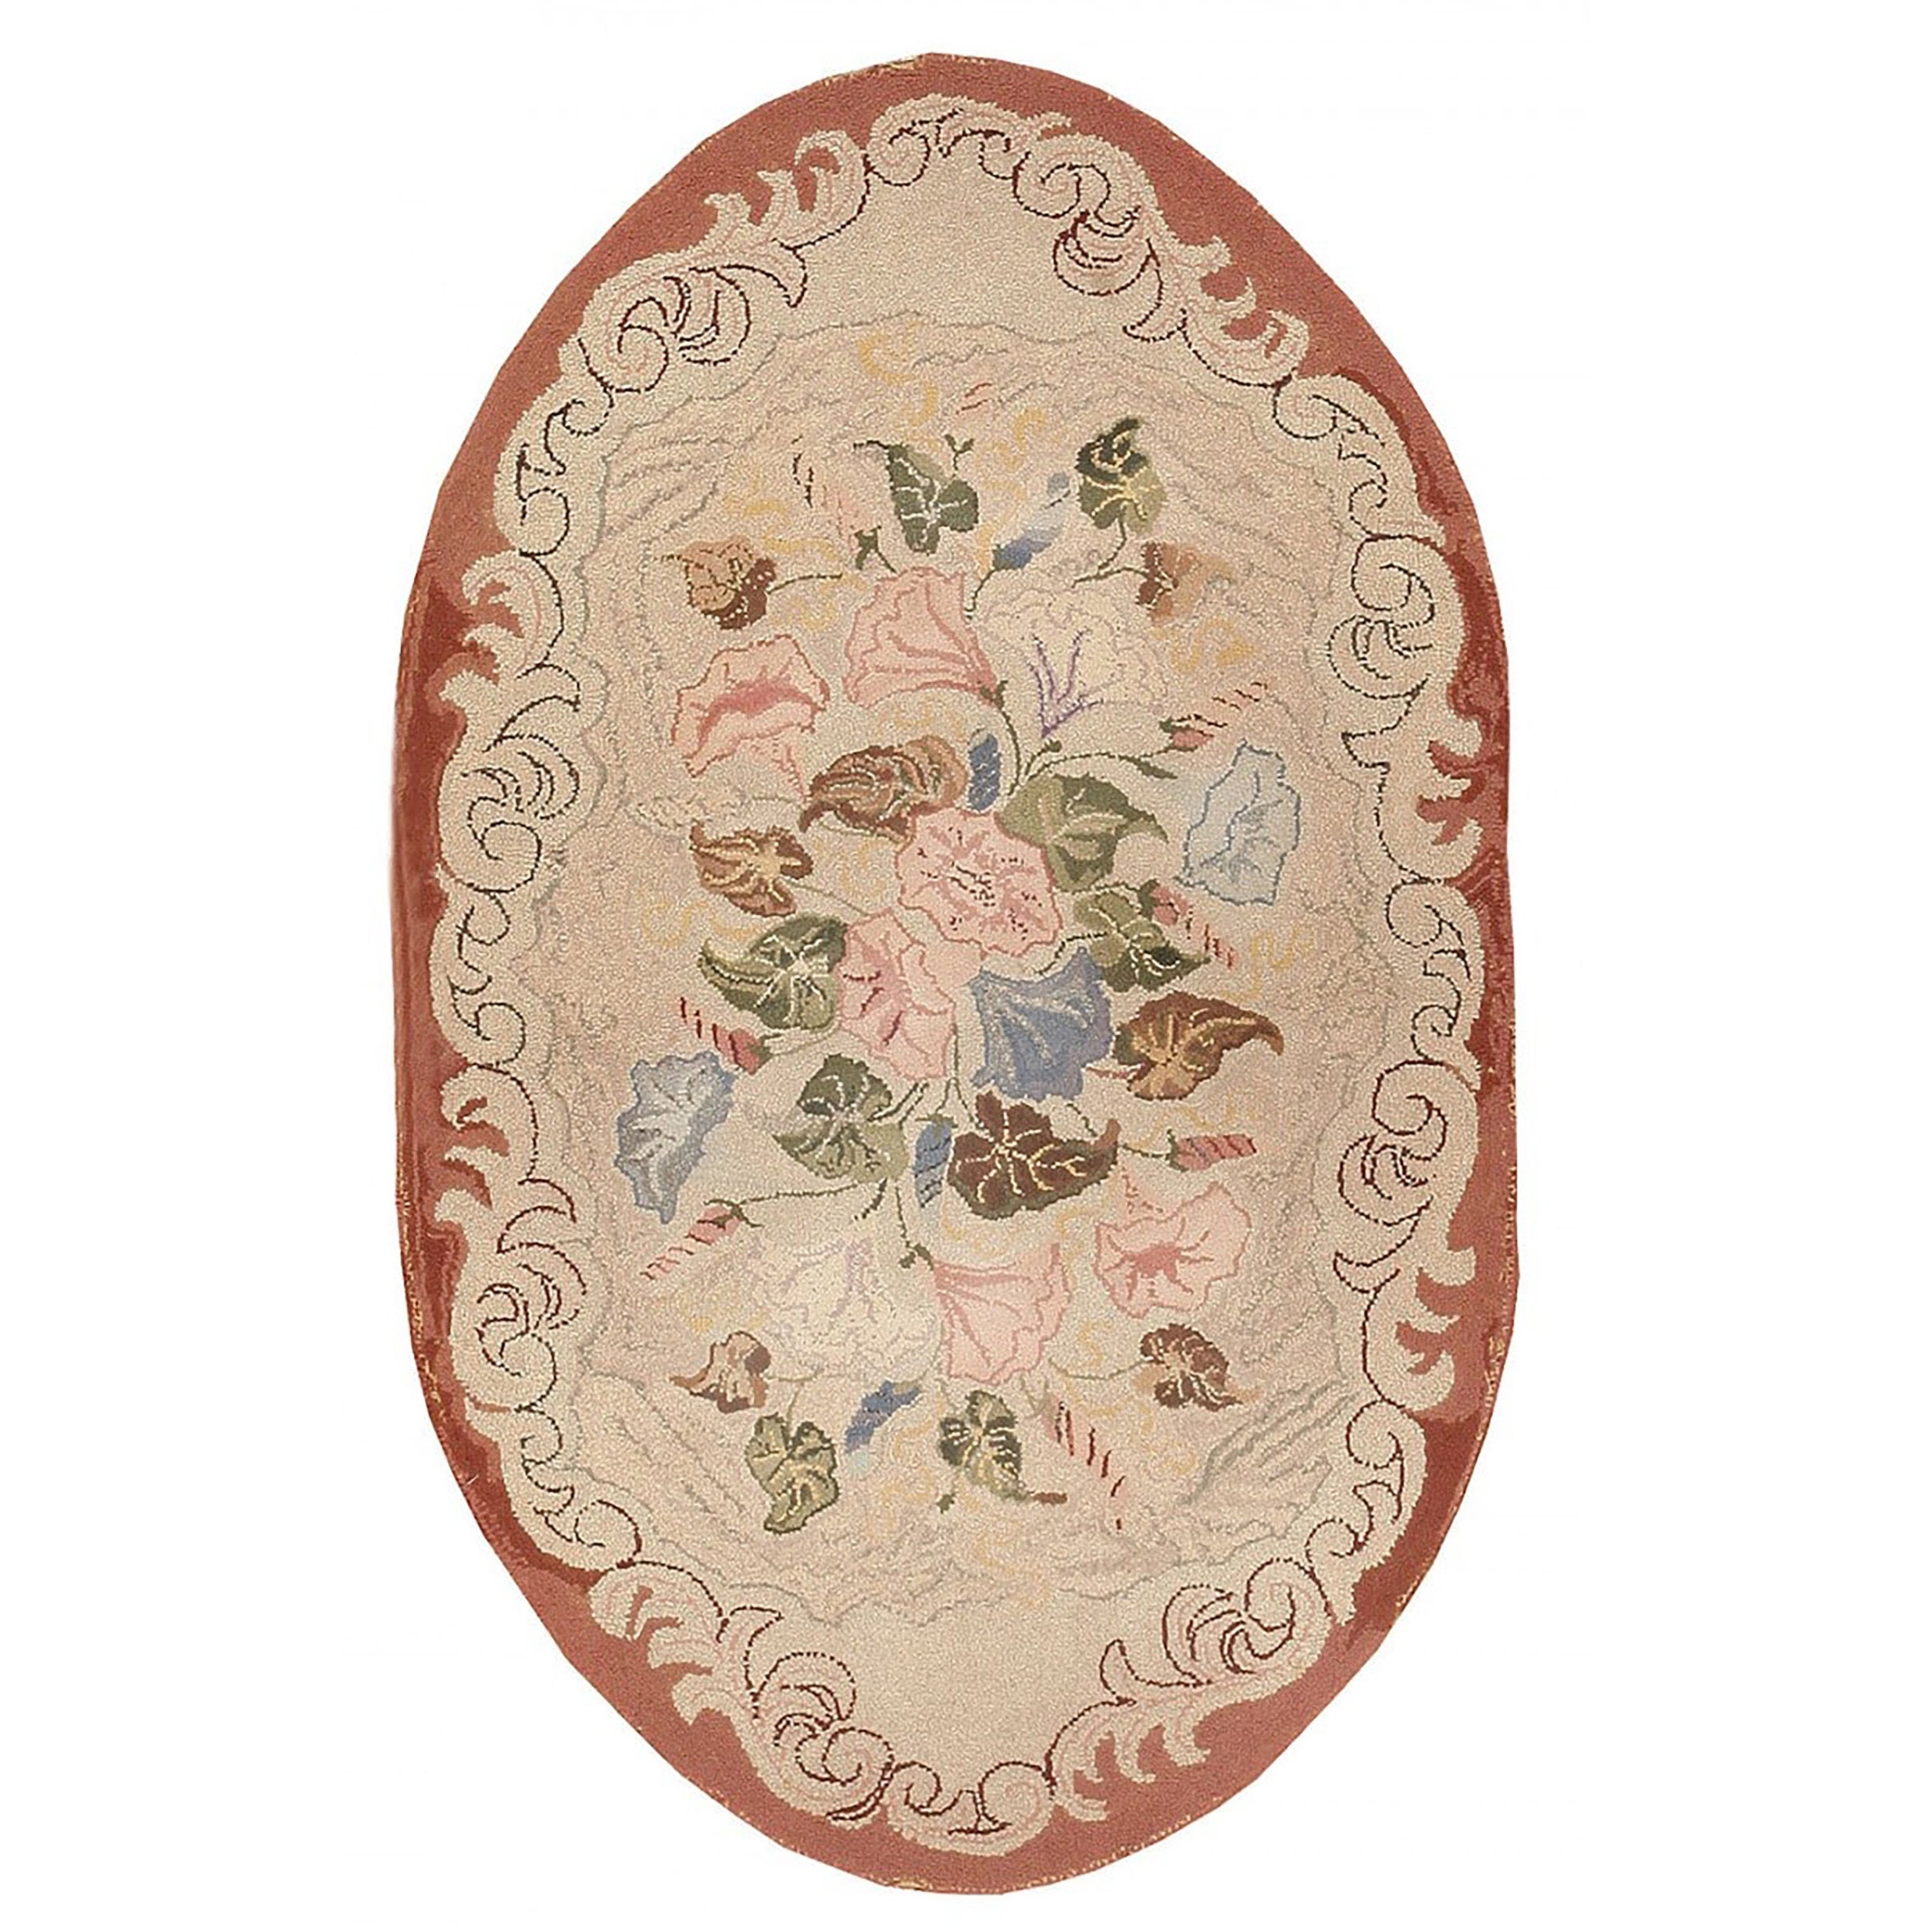 Ovaler ovaler antiker amerikanischer Teppich mit Blumenmuster und Kapuze 2'6" x 4'